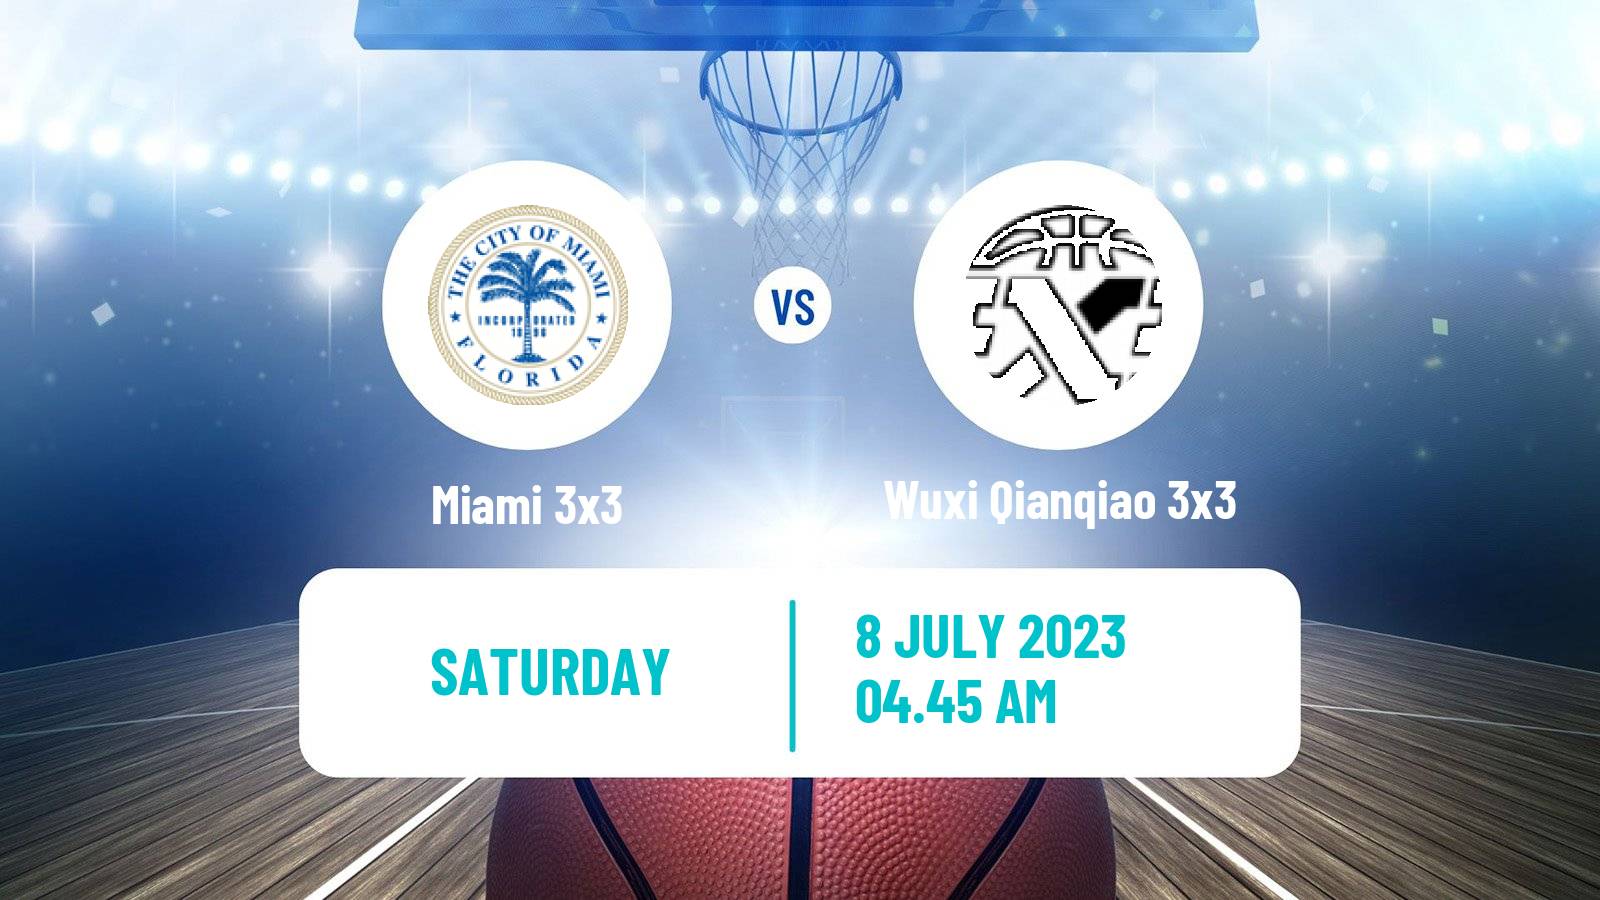 Basketball World Tour Macau 3x3 Miami 3x3 - Wuxi Qianqiao 3x3